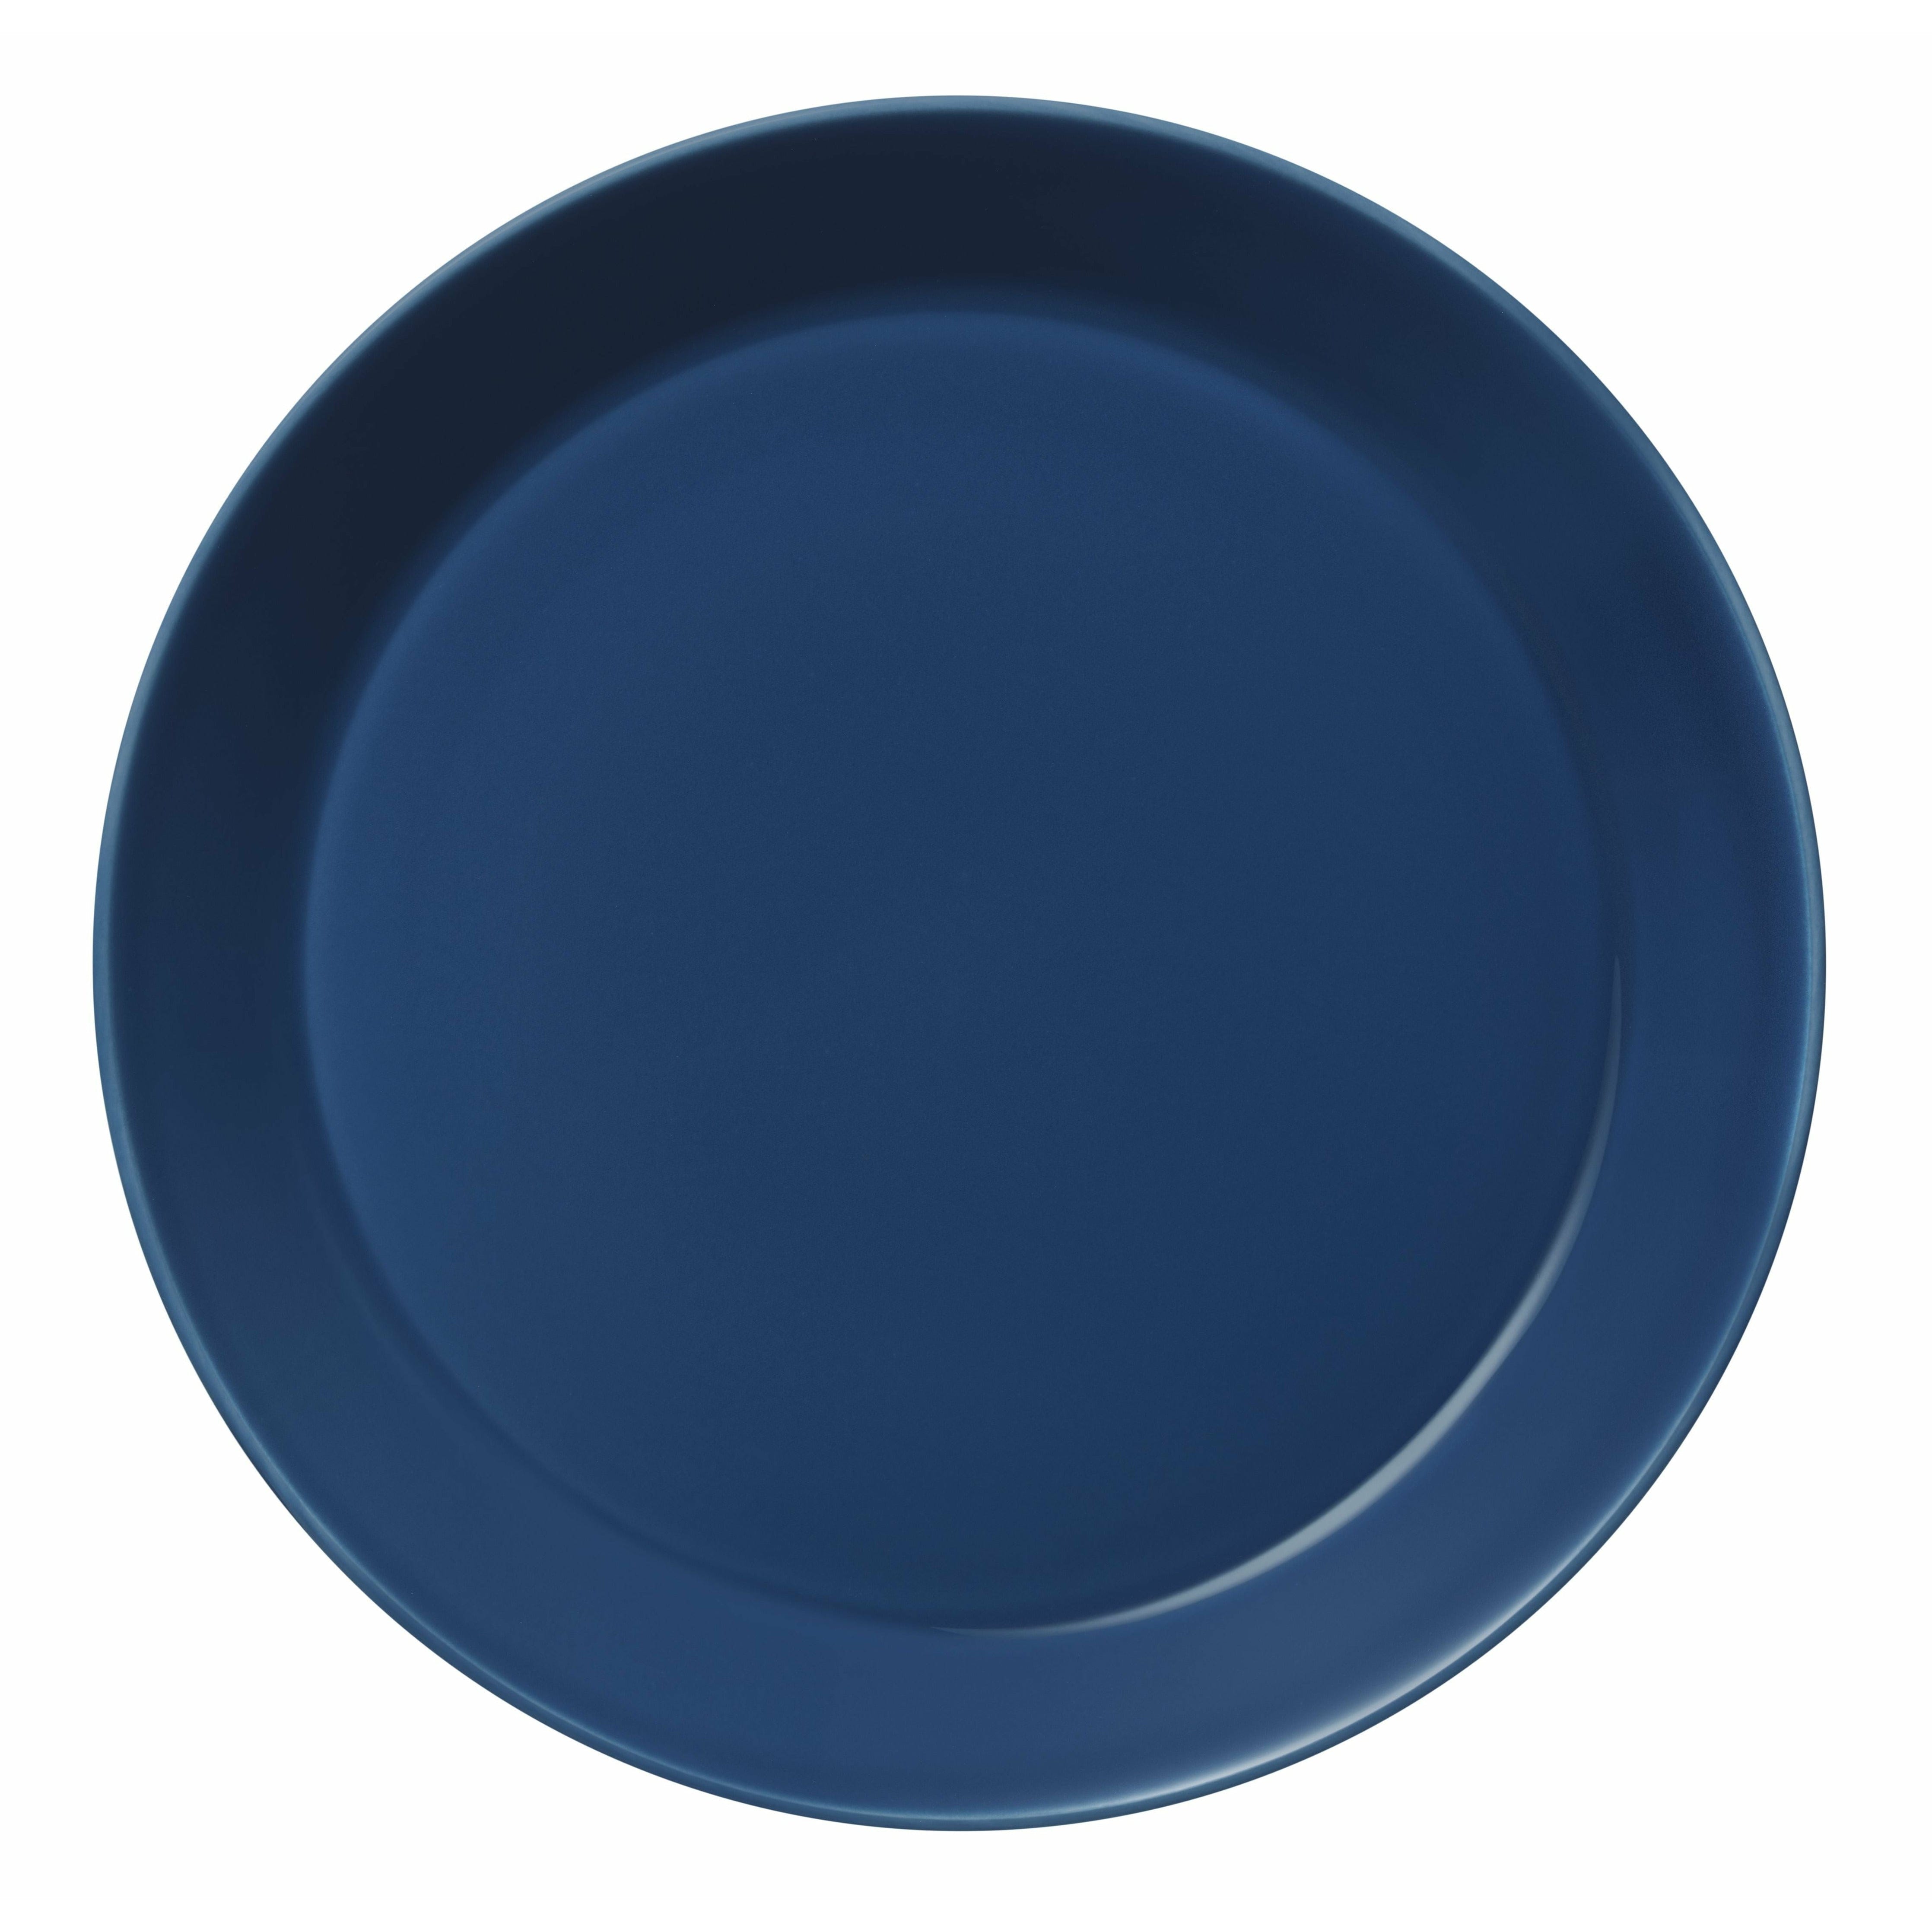 Iittala Teema Plate Flat 26cm, Vintage Blue